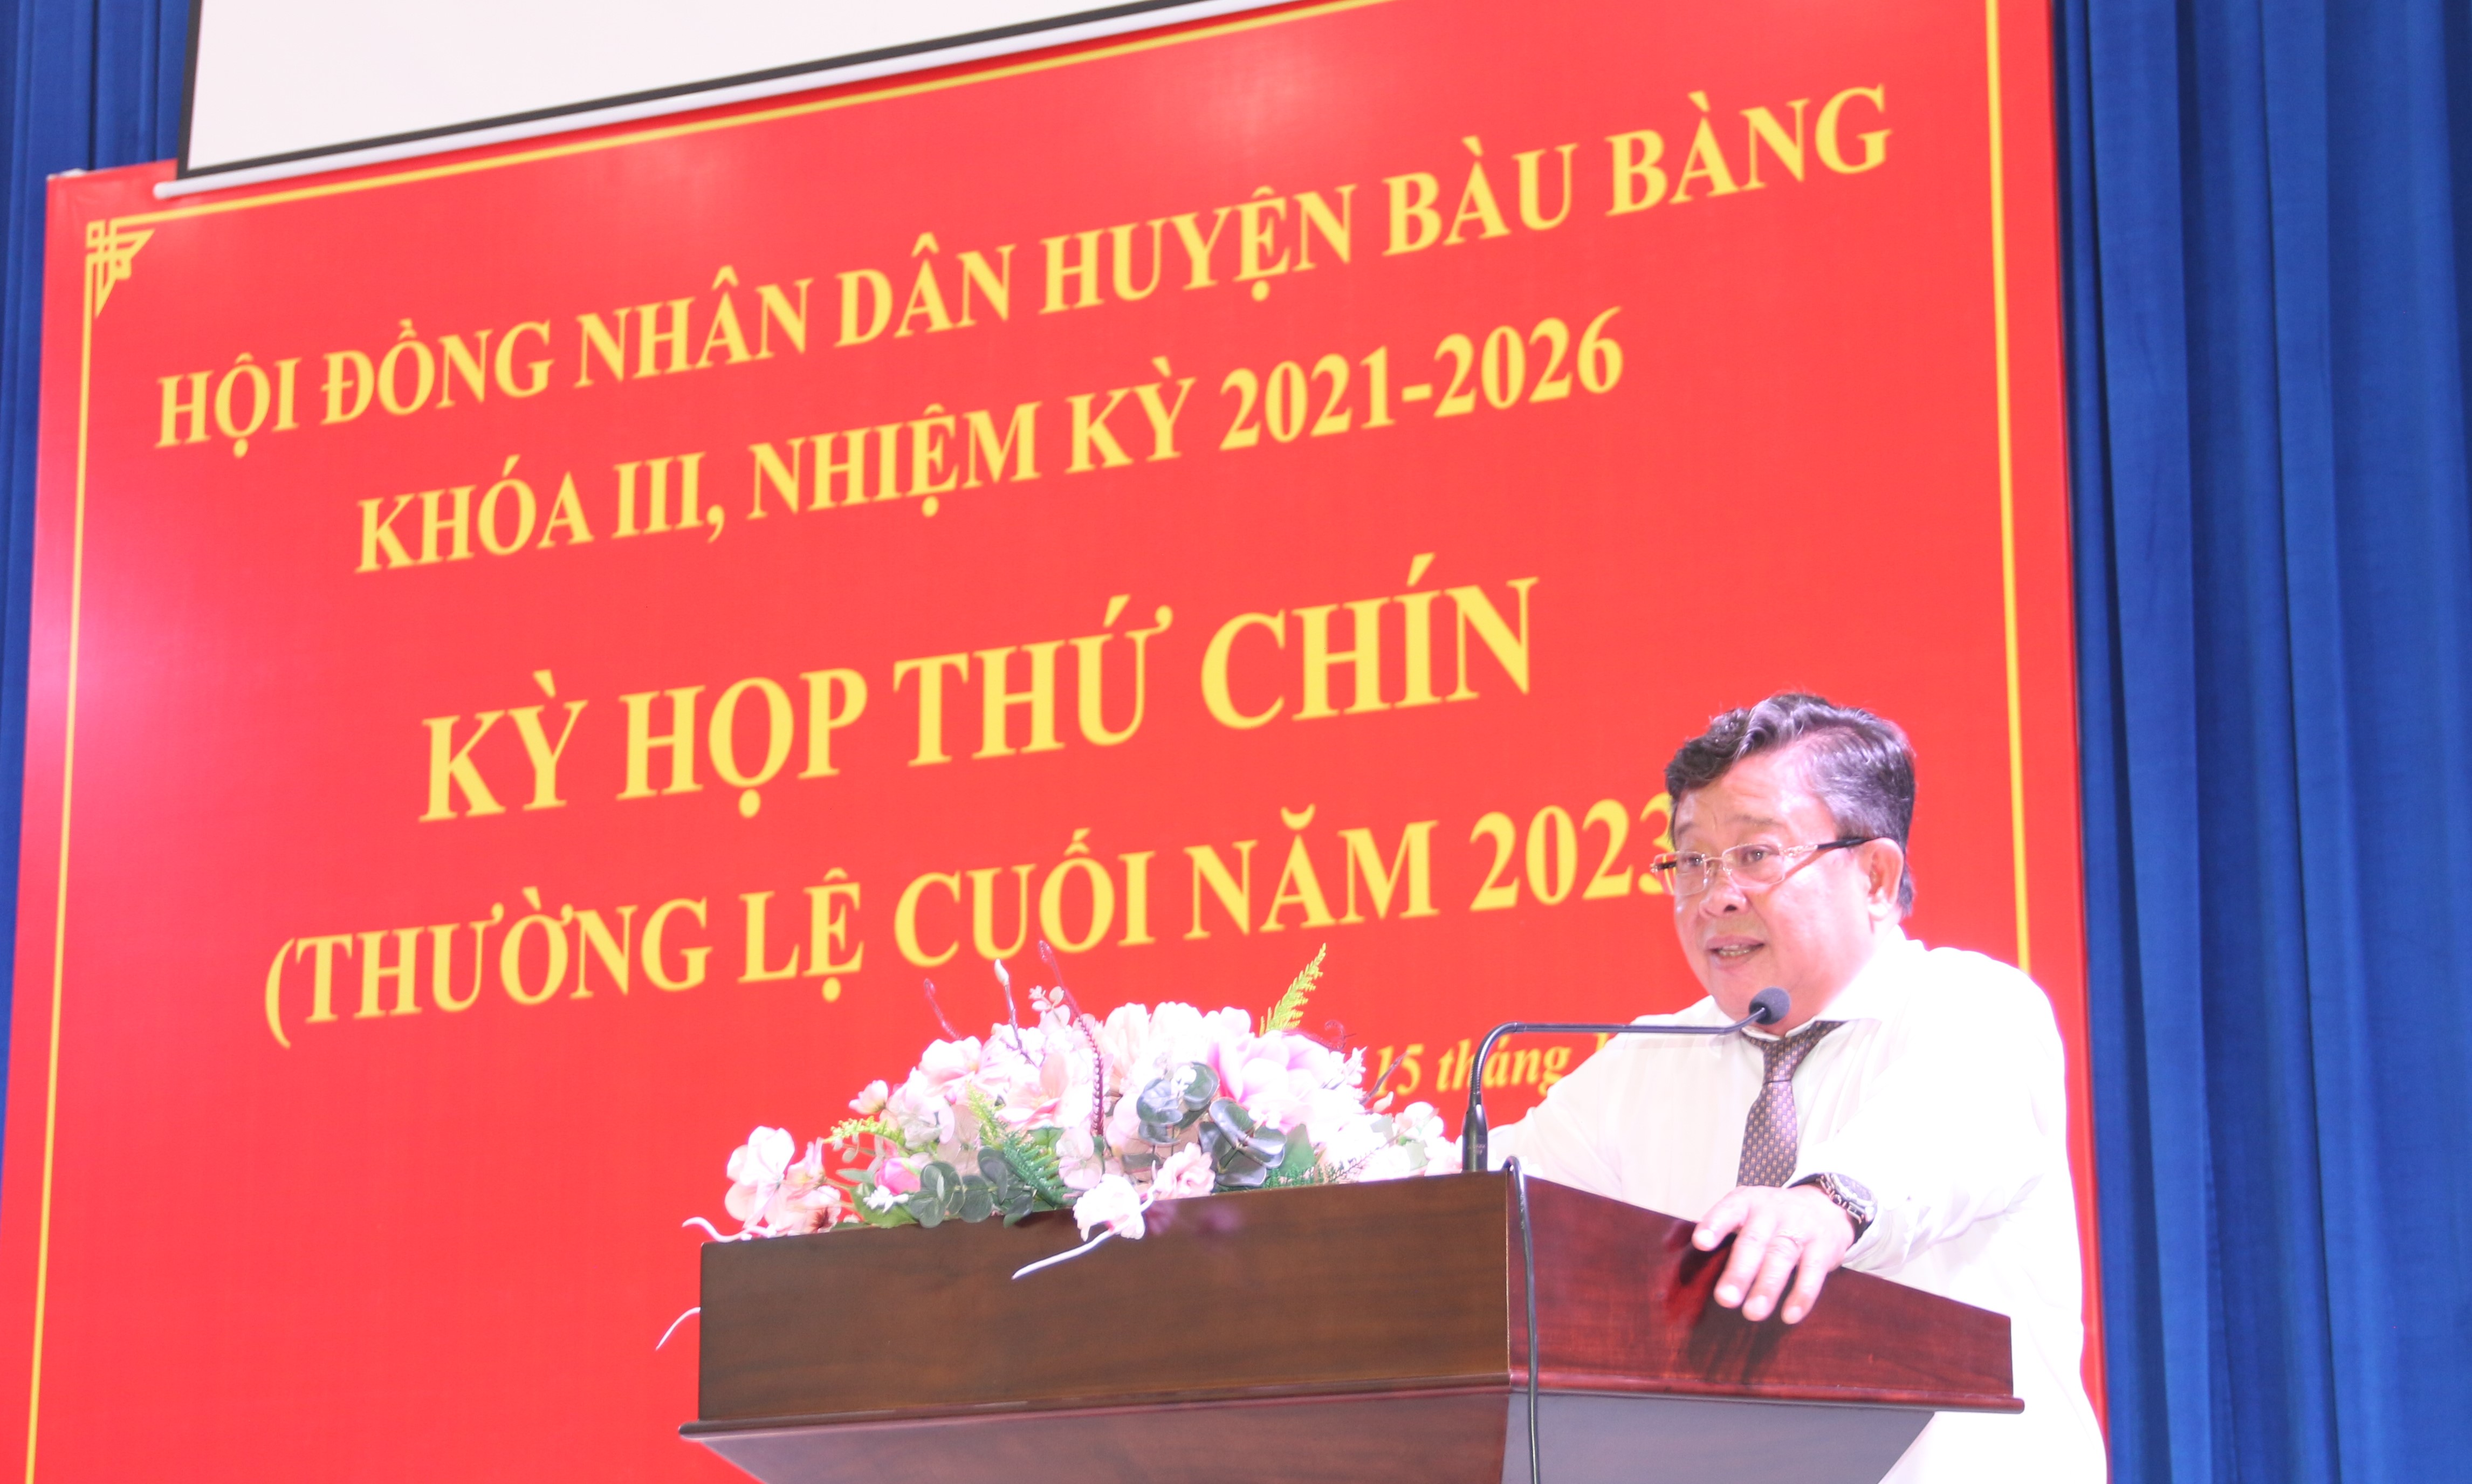 Bàu Bàng khai mạc Kỳ họp thứ 09 – (thường lệ cuối năm 2023) HĐND huyện Bàu Bàng khóa III, nhiệm kỳ 2021-2026